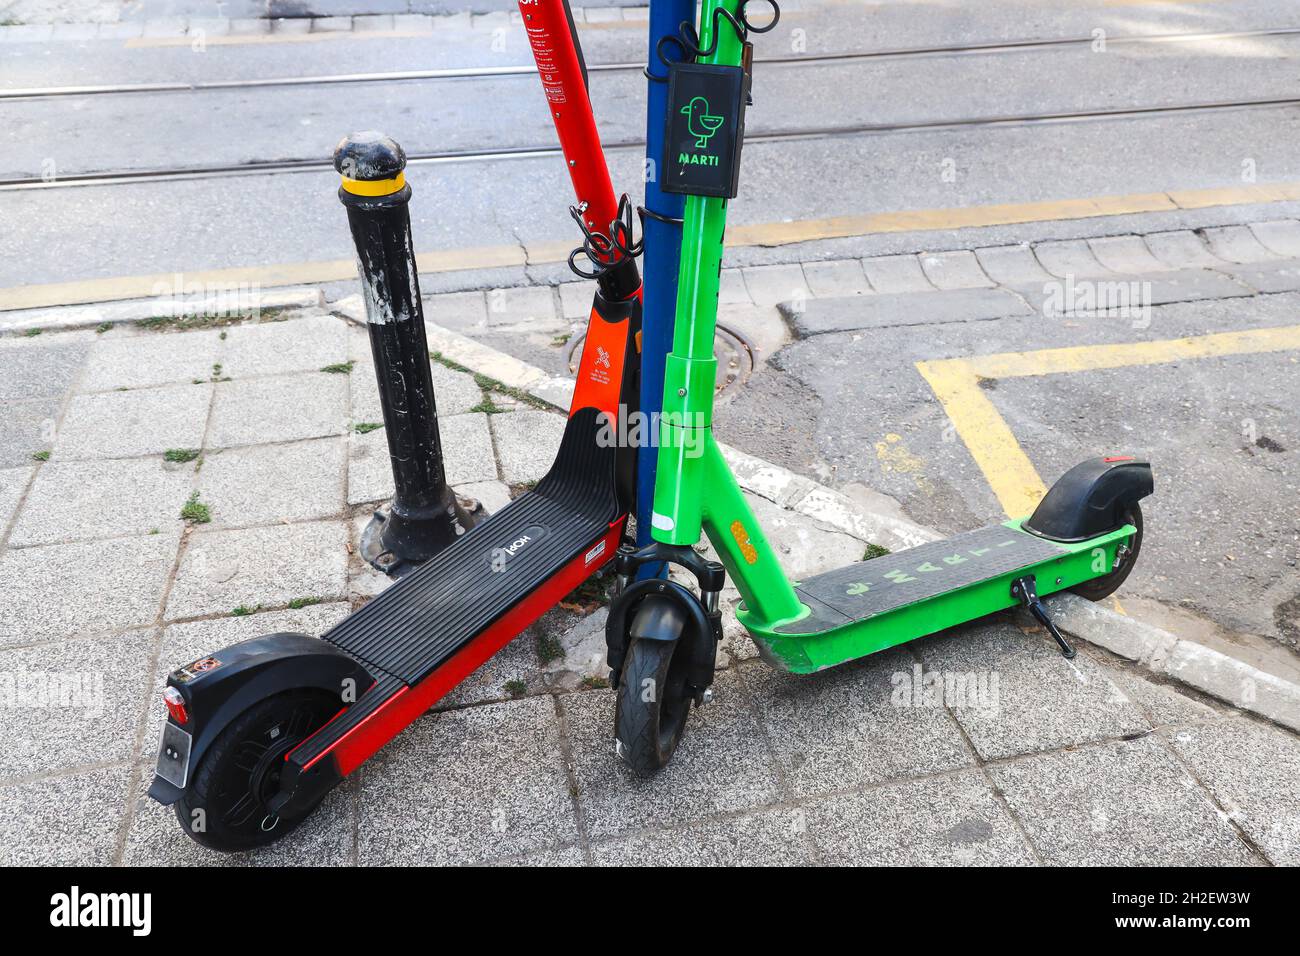 İstanbul, Turquía - Verde y rojo alquiler de scooter eléctrico, llamado  como gaviotas (martí), transporte público, estacionado en la acera, no hay  personas Fotografía de stock - Alamy